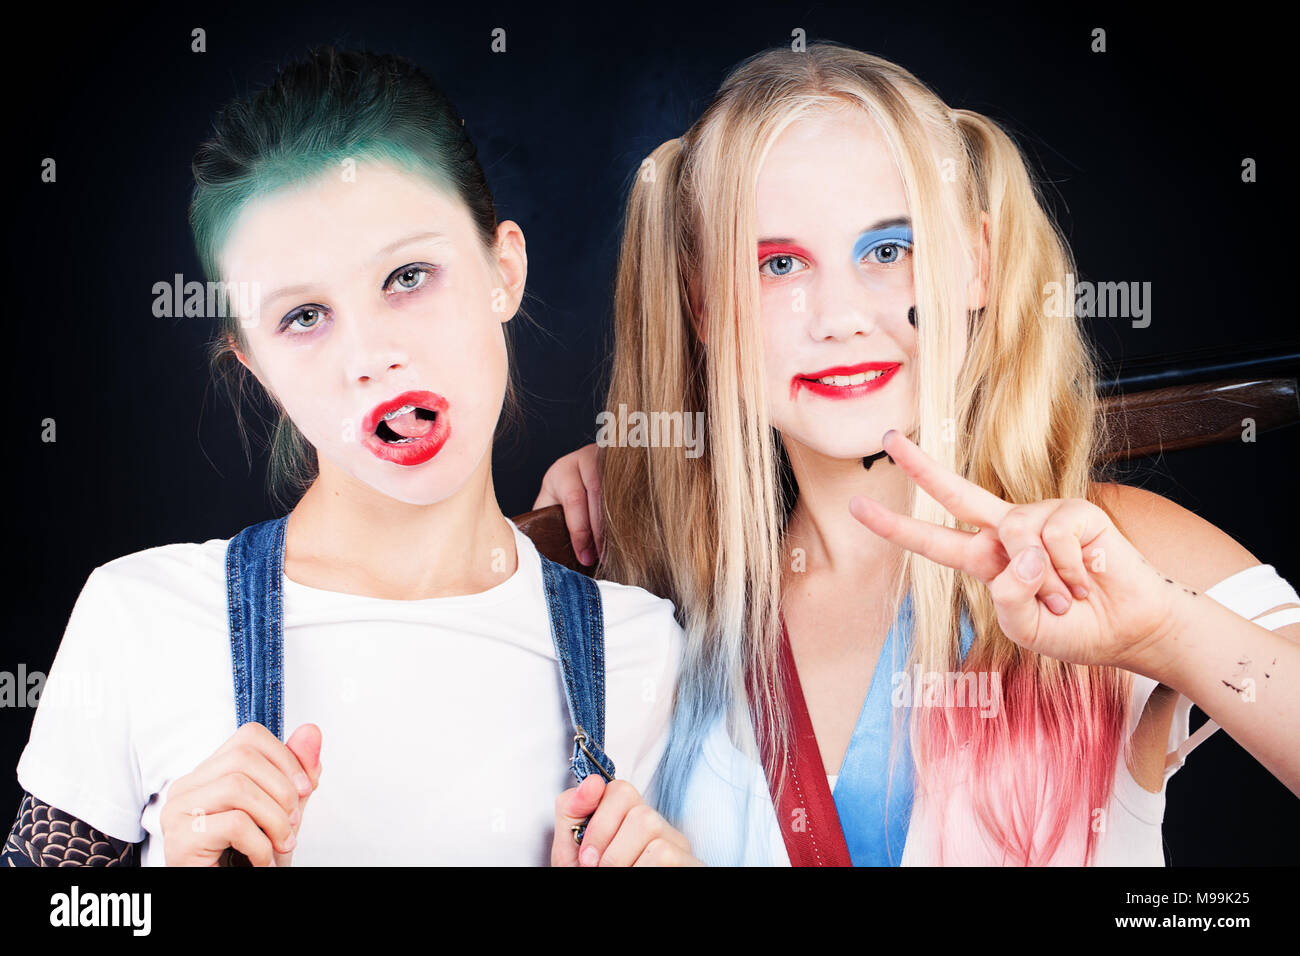 Junge Mädchen mit Halloween Make-up. Porträt von zwei Kinder mit  künstlerischen Make-up Stockfotografie - Alamy